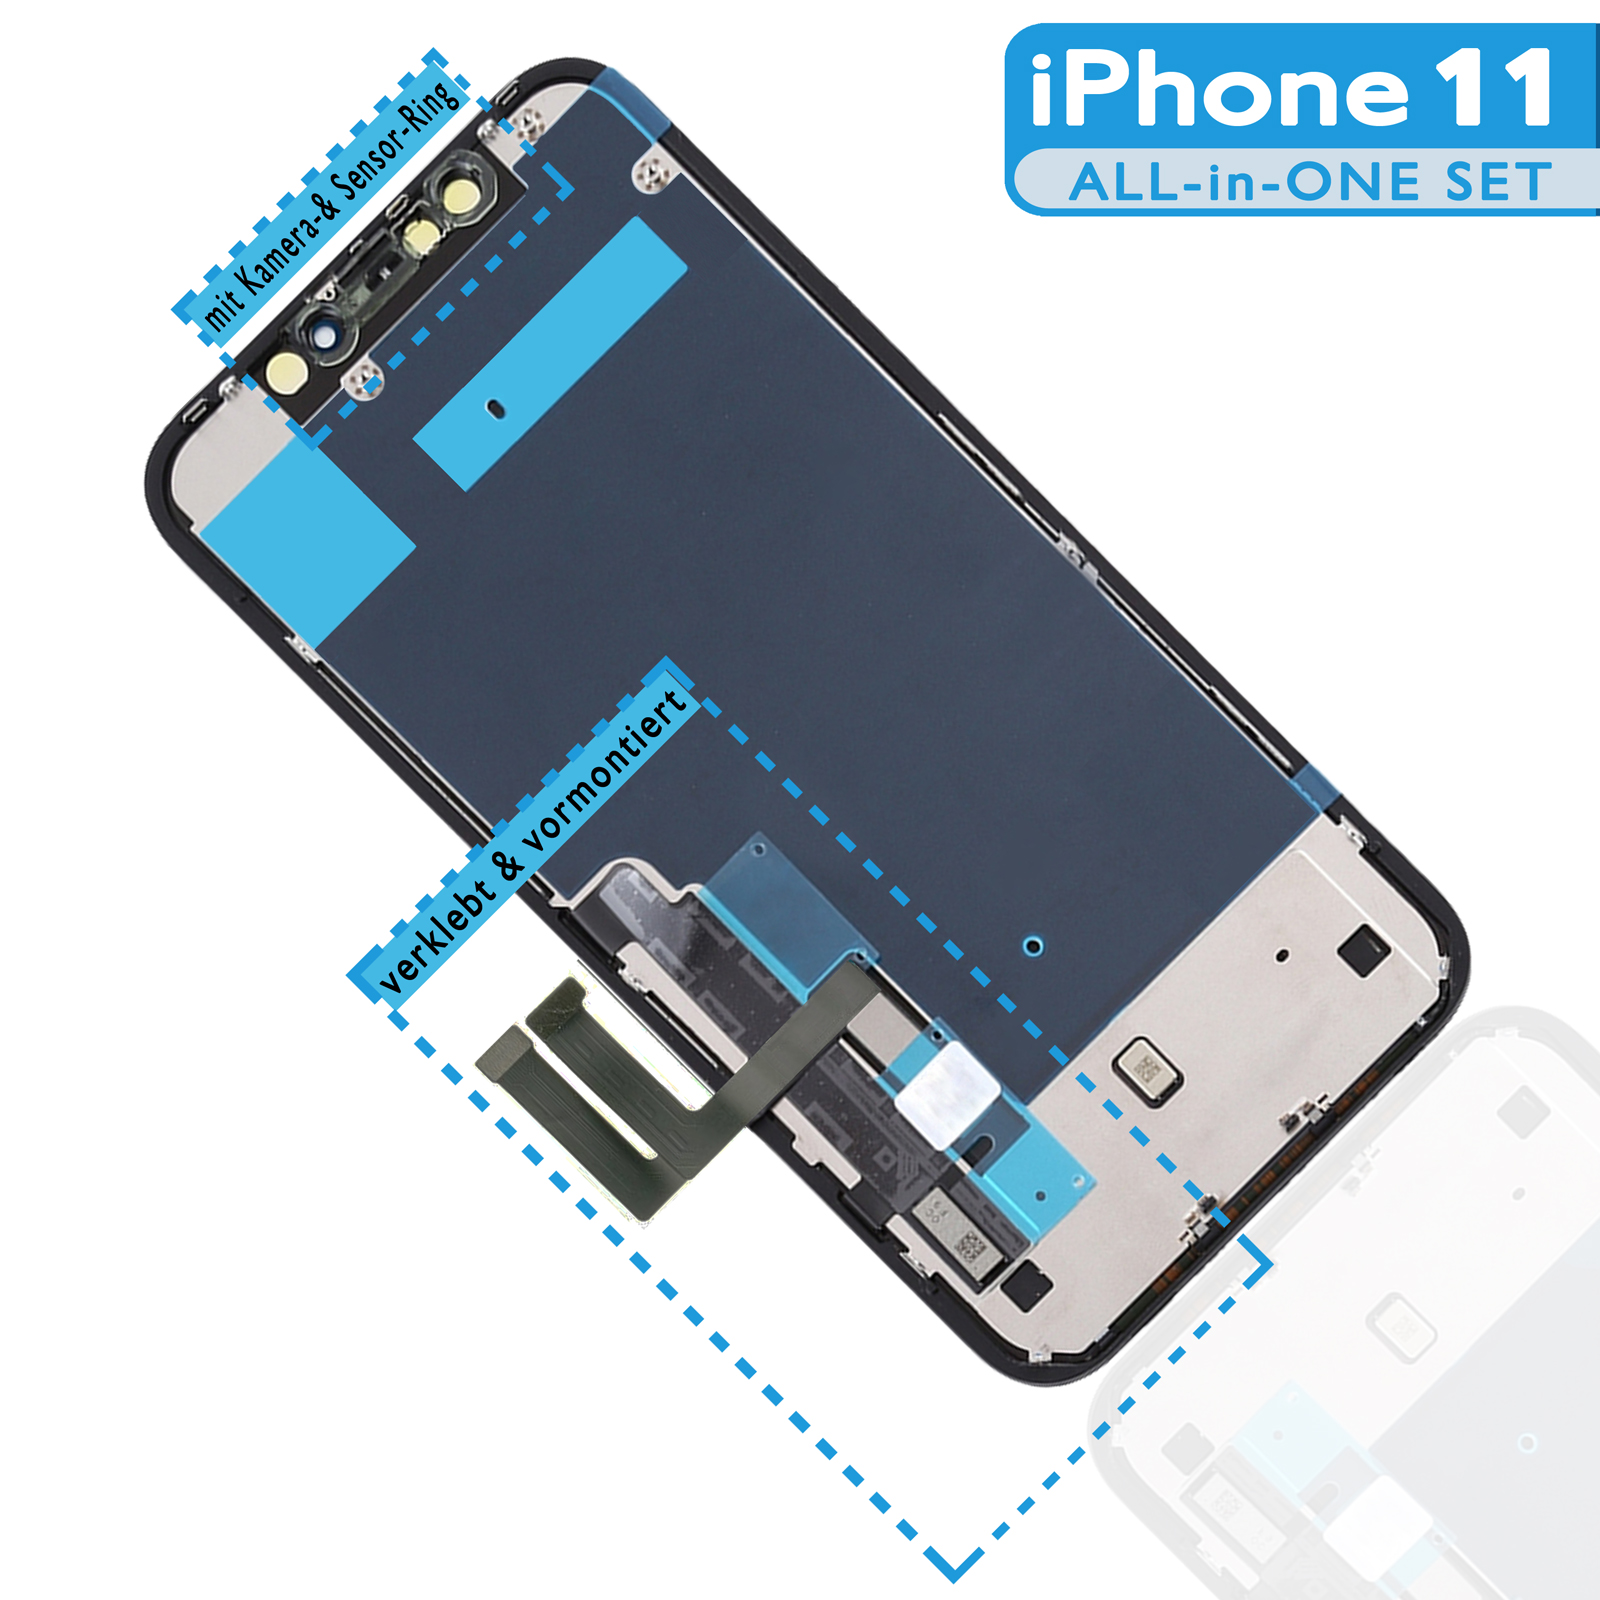 Display für iPhone 11 in PROFESSIONAL-Qualität